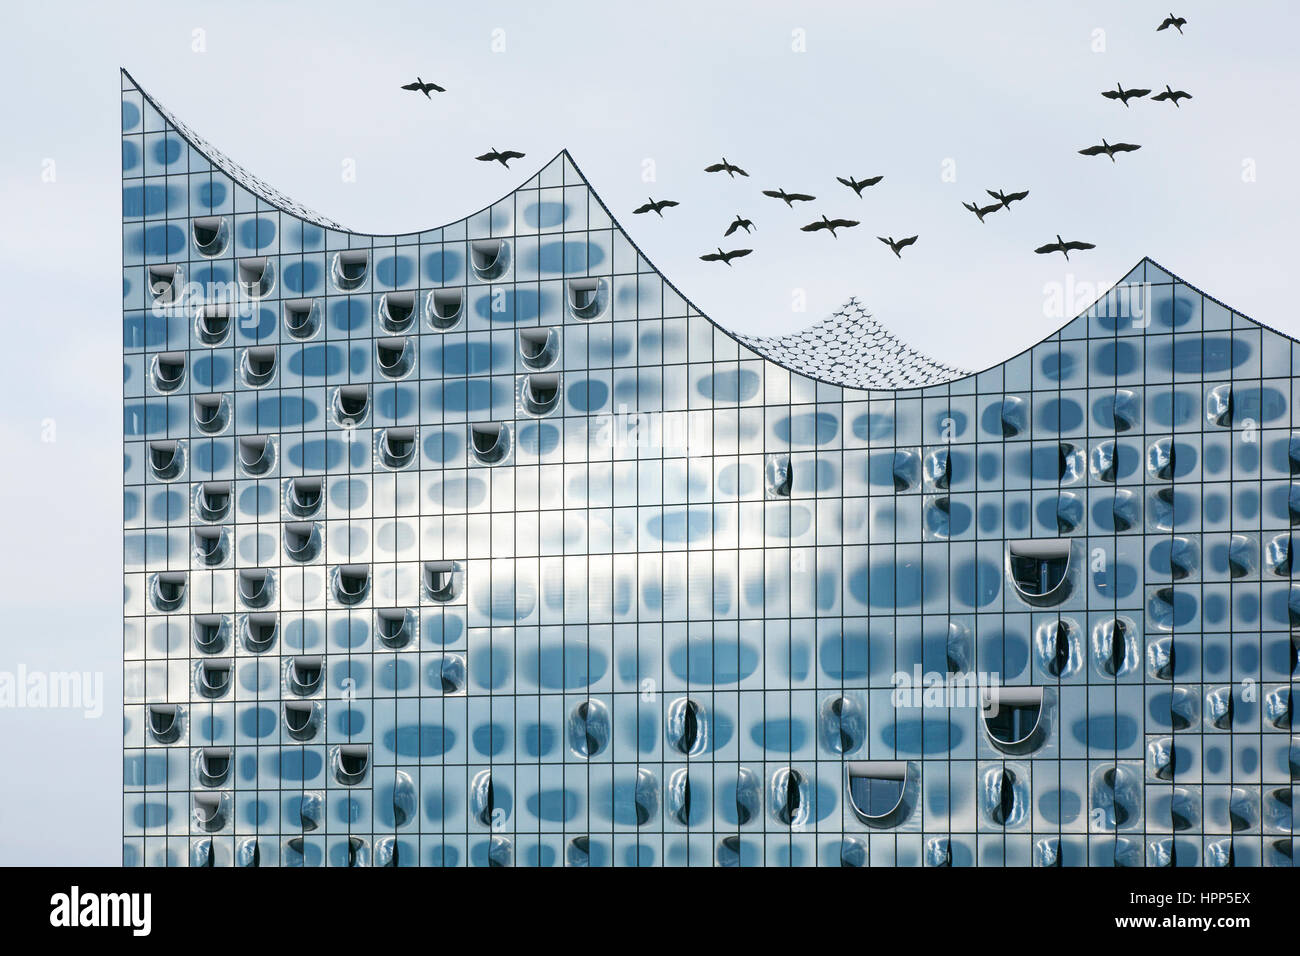 Stormo di uccelli volare oltre la facciata in vetro del Elbe Philharmonic Hall, Amburgo, Germania Foto Stock